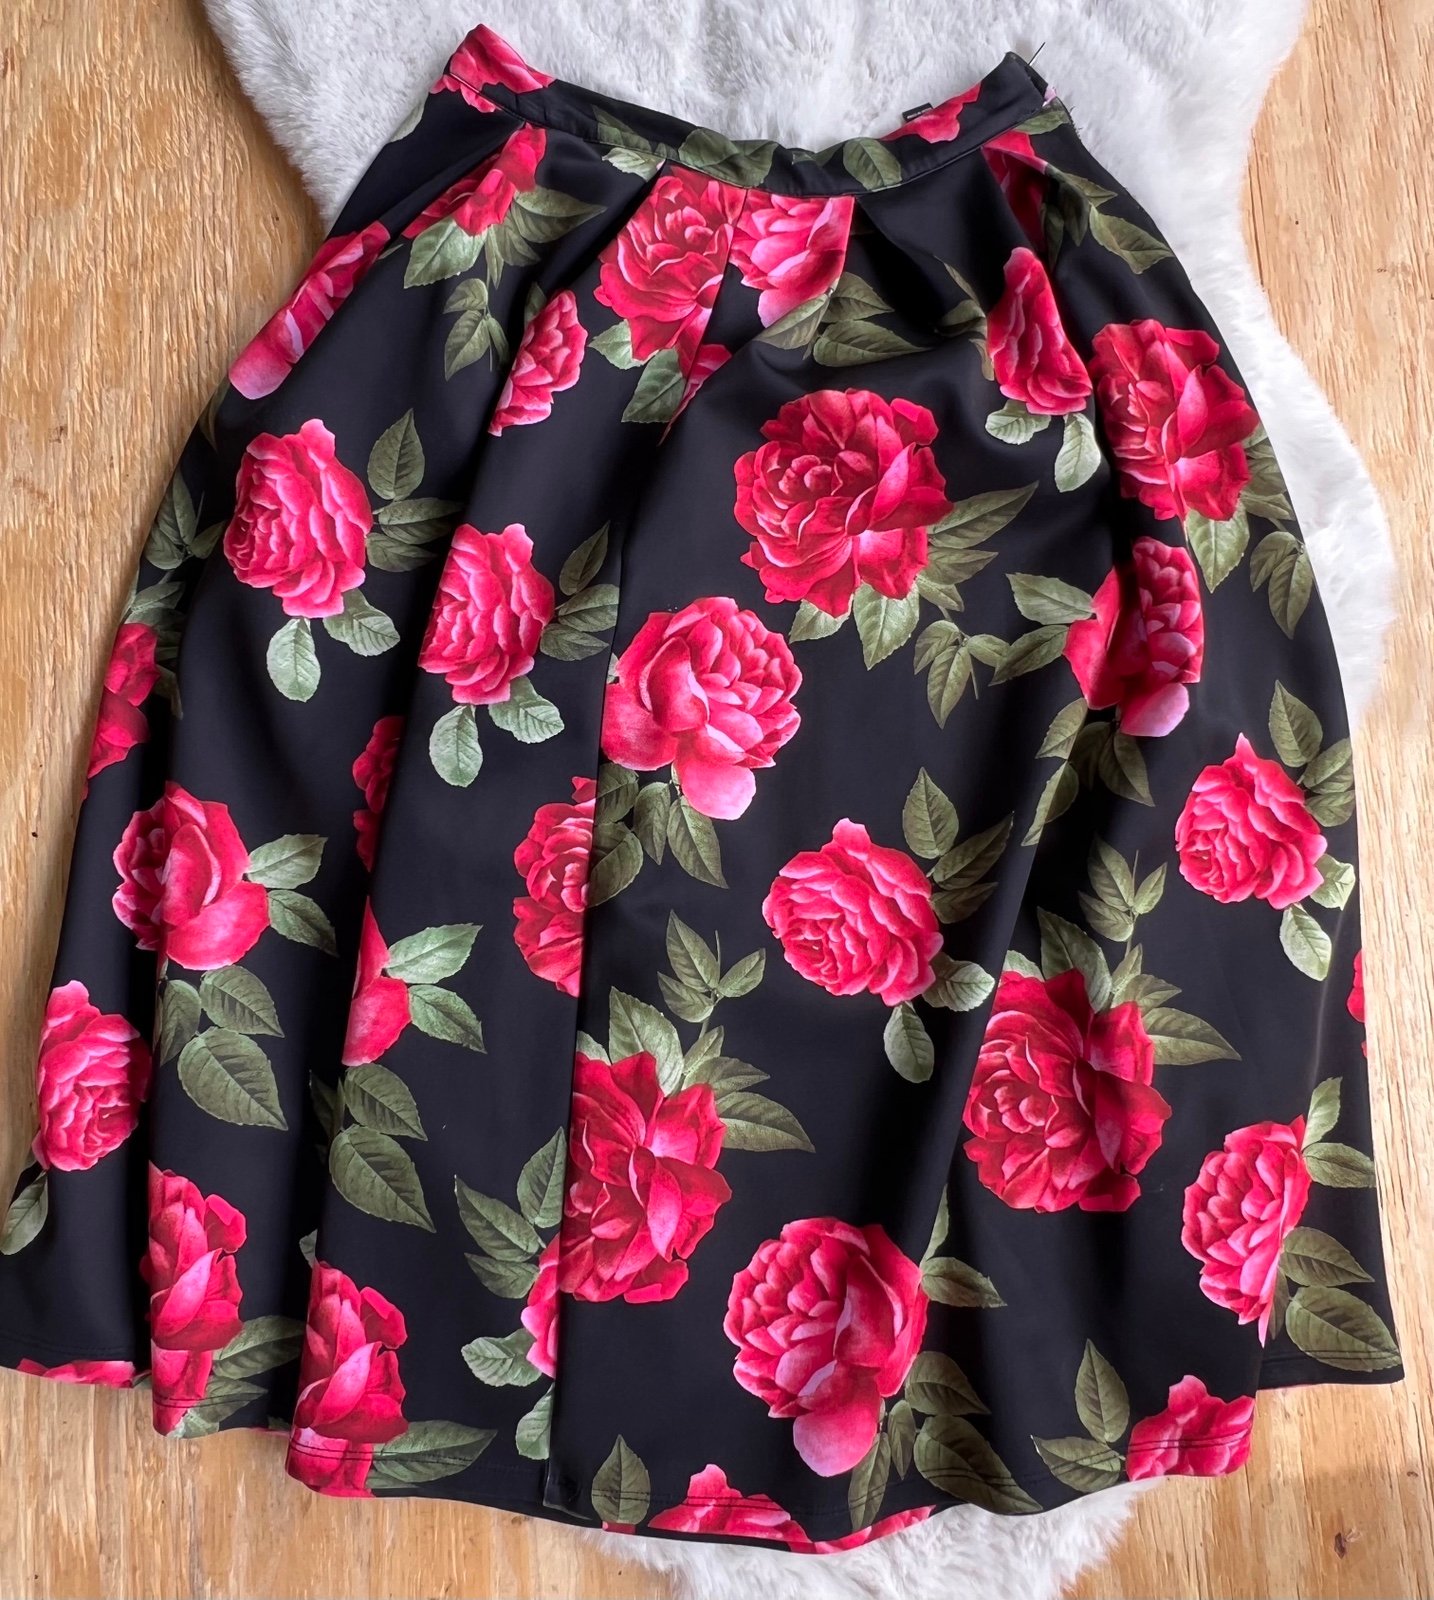 Beautiful Red floral black skirt forever 21 Nh3TdGD5z outlet online shop